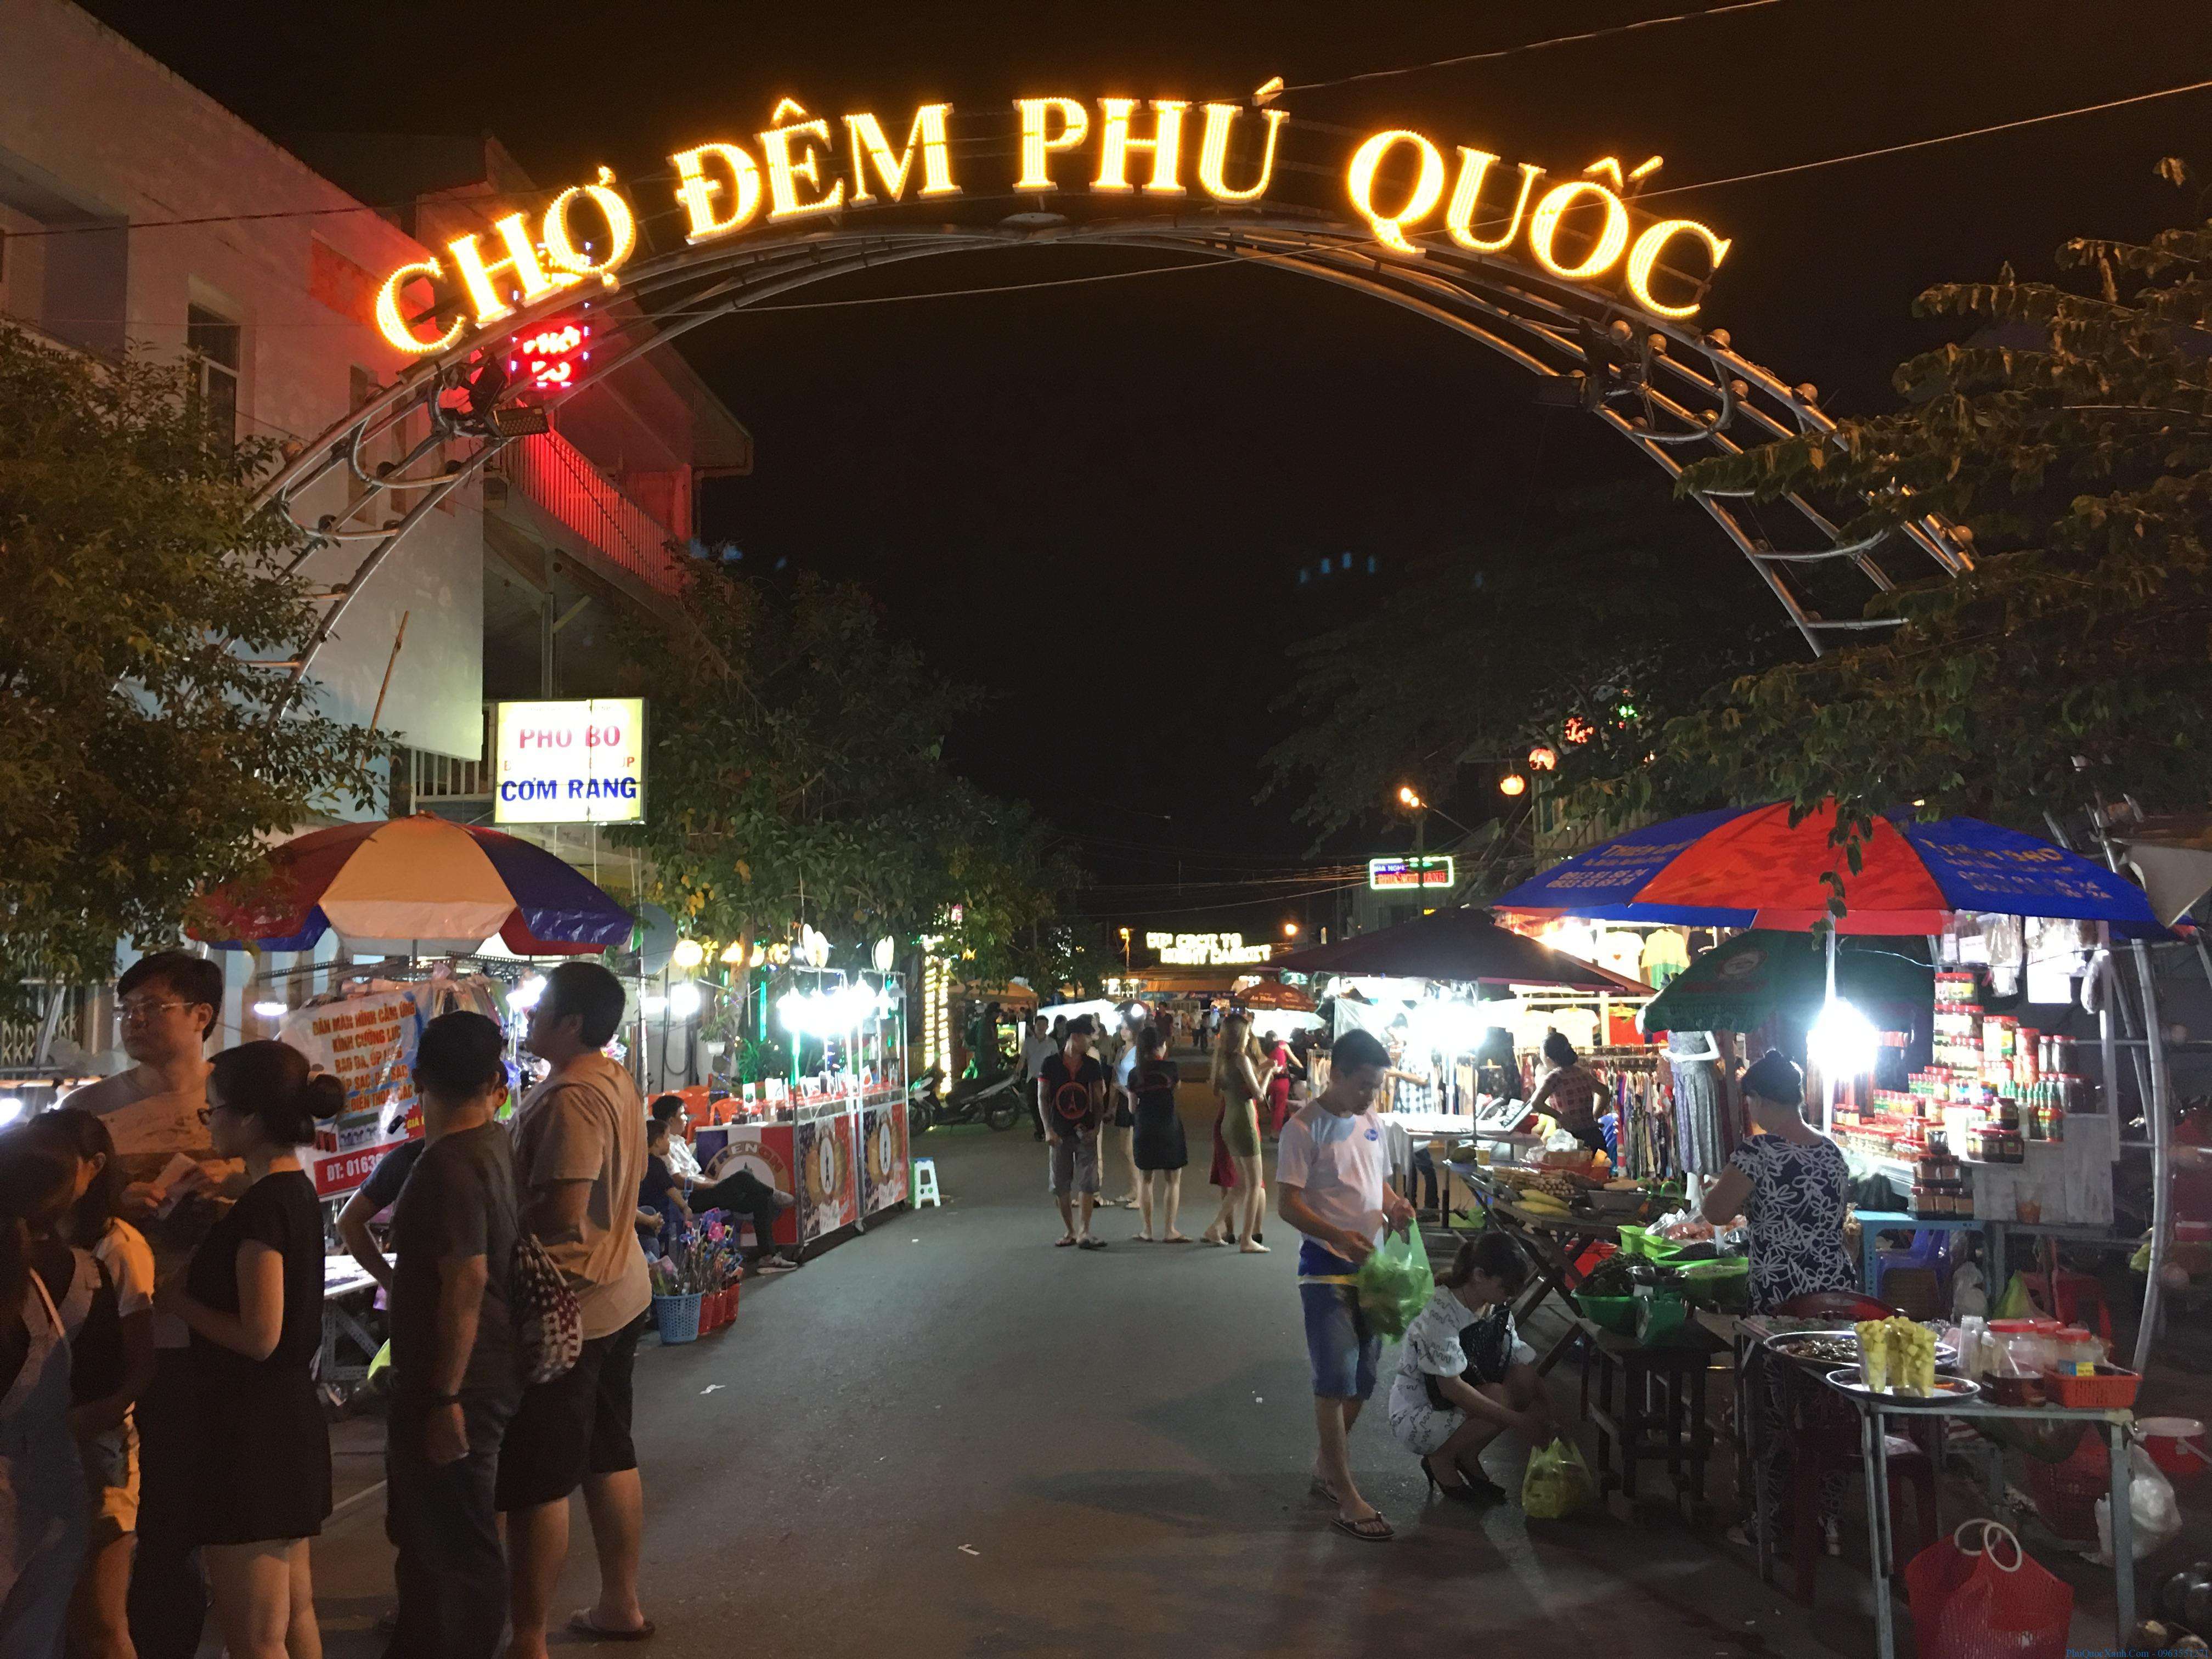 Chợ đêm Phú Quốc nổi tiếng với nhieuf món ăn vặt độc đáo